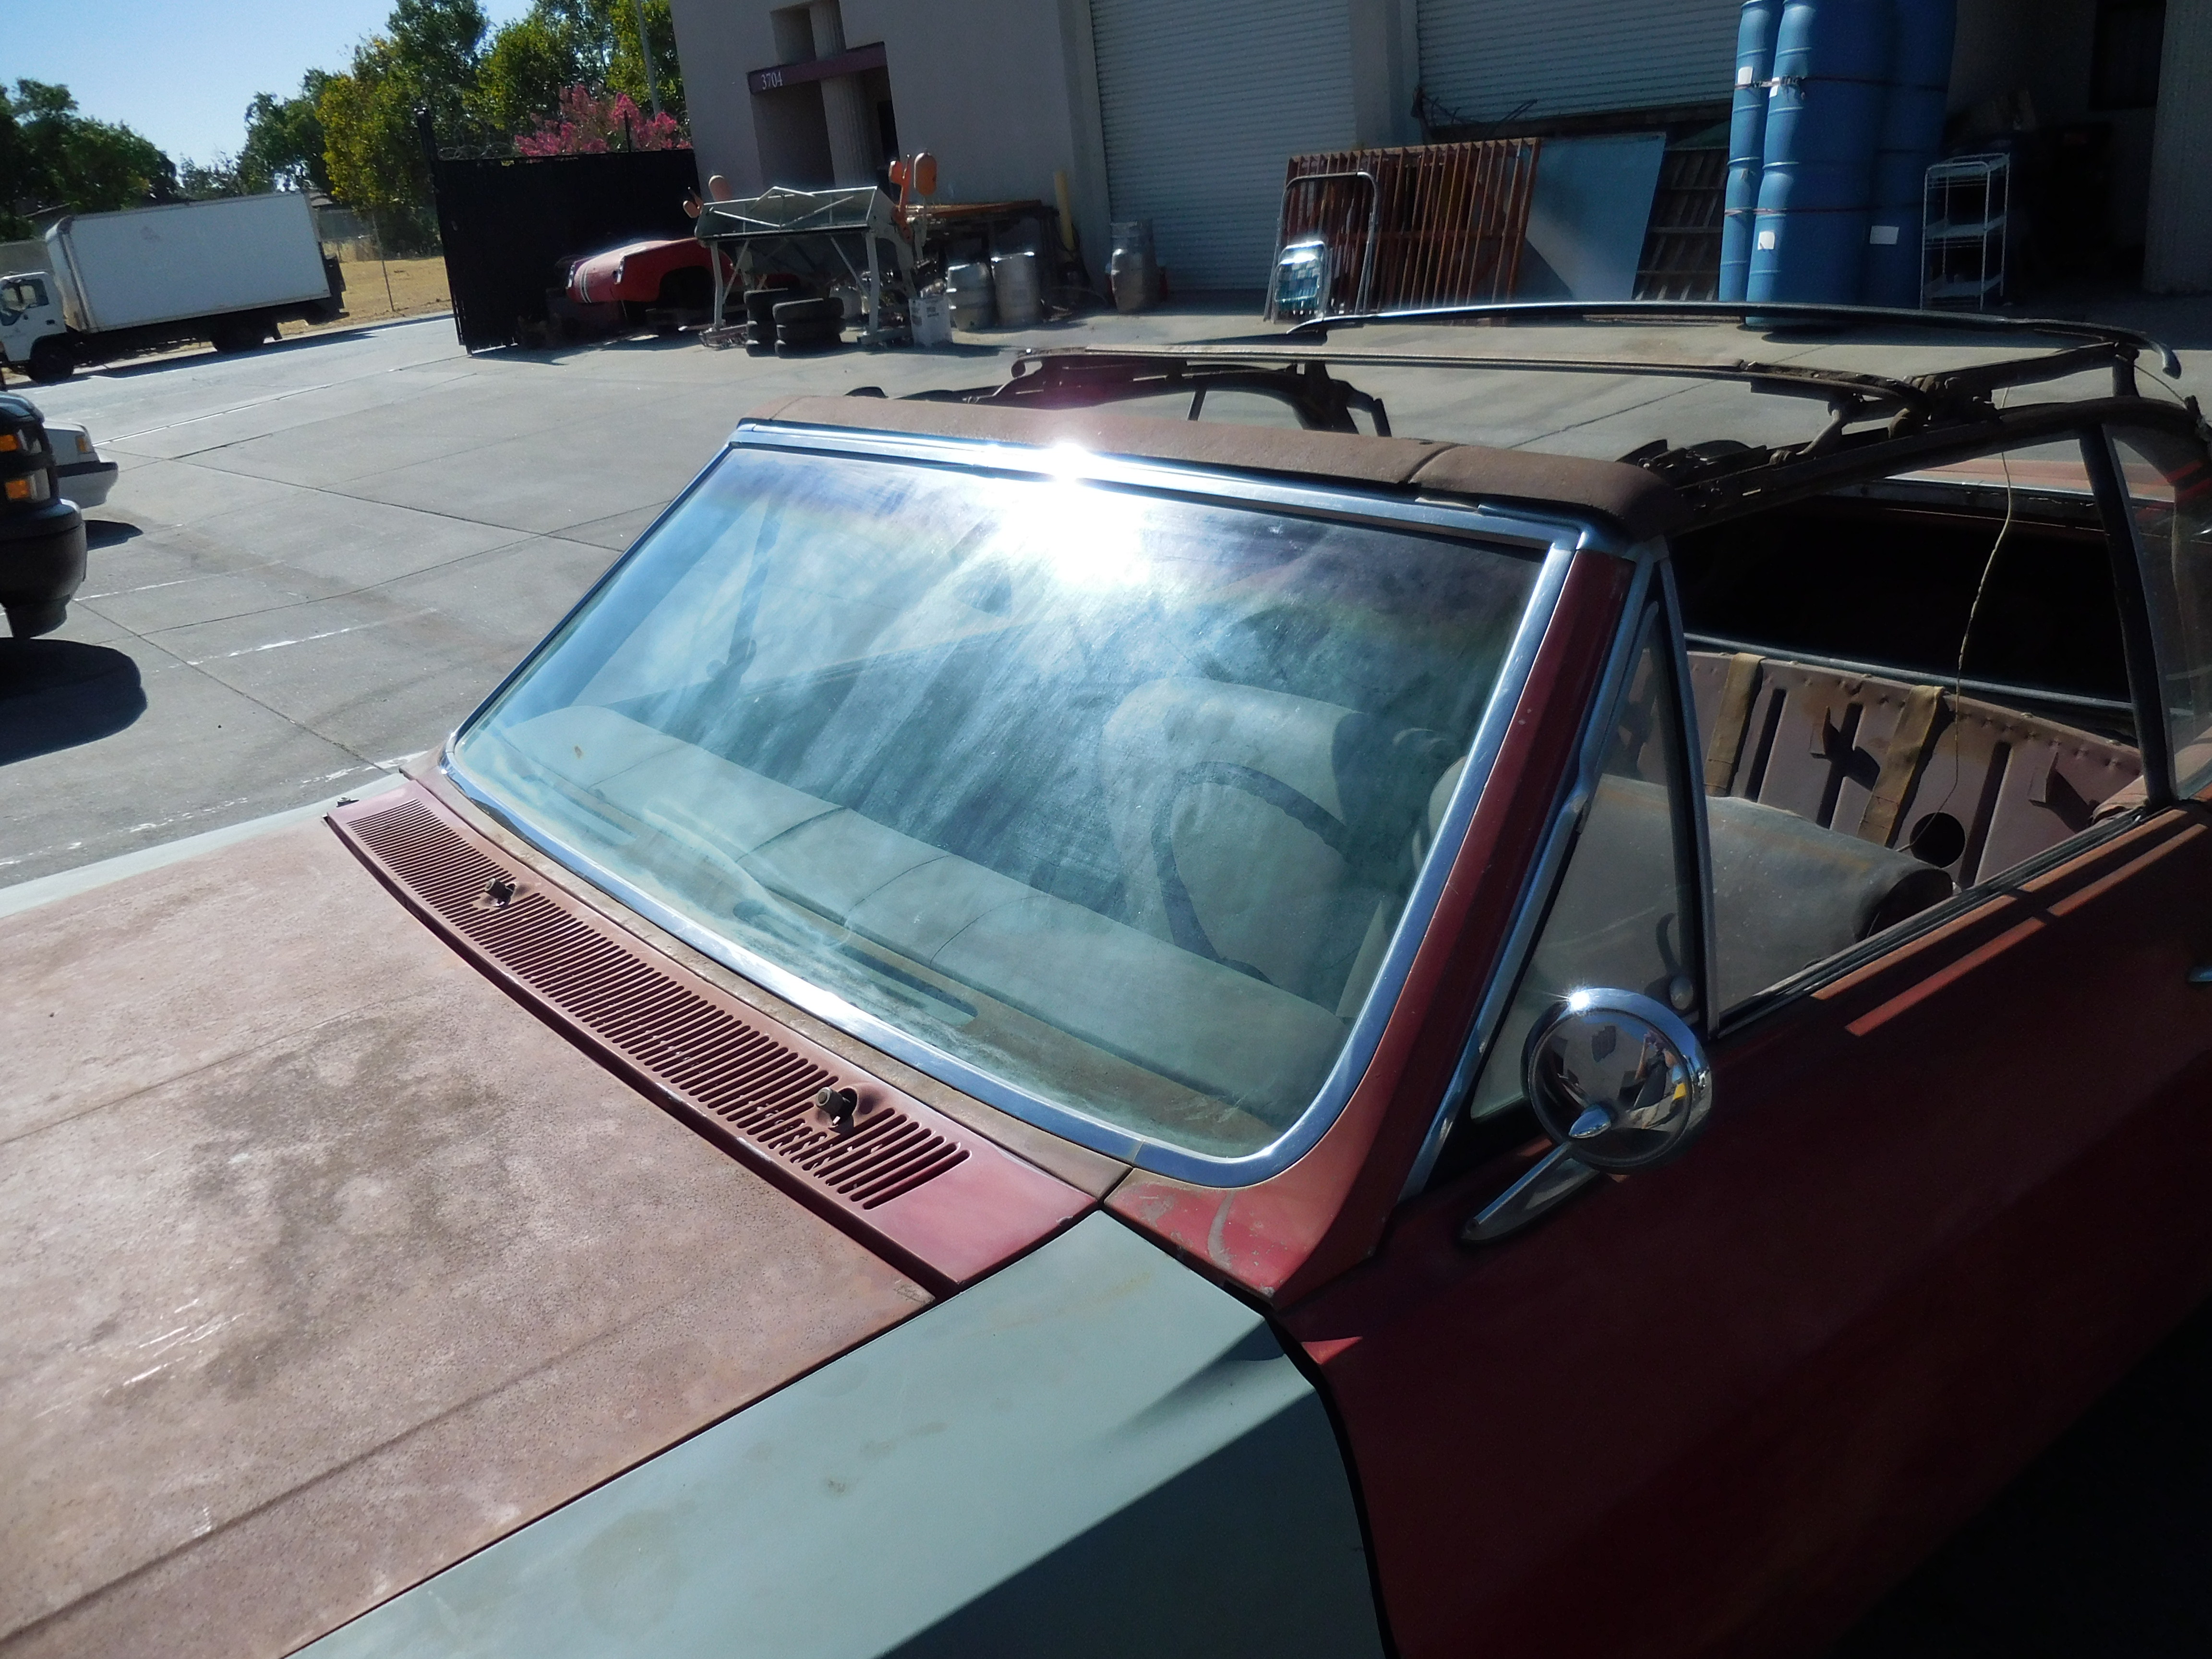 1966, Buick, Skylark, Convertible, 300, AT,door,fender,hood,frame,quarter,panel,deck,lid,bumper,front,rear,glass,top,suspension,molding,trim,column,steering,floor,